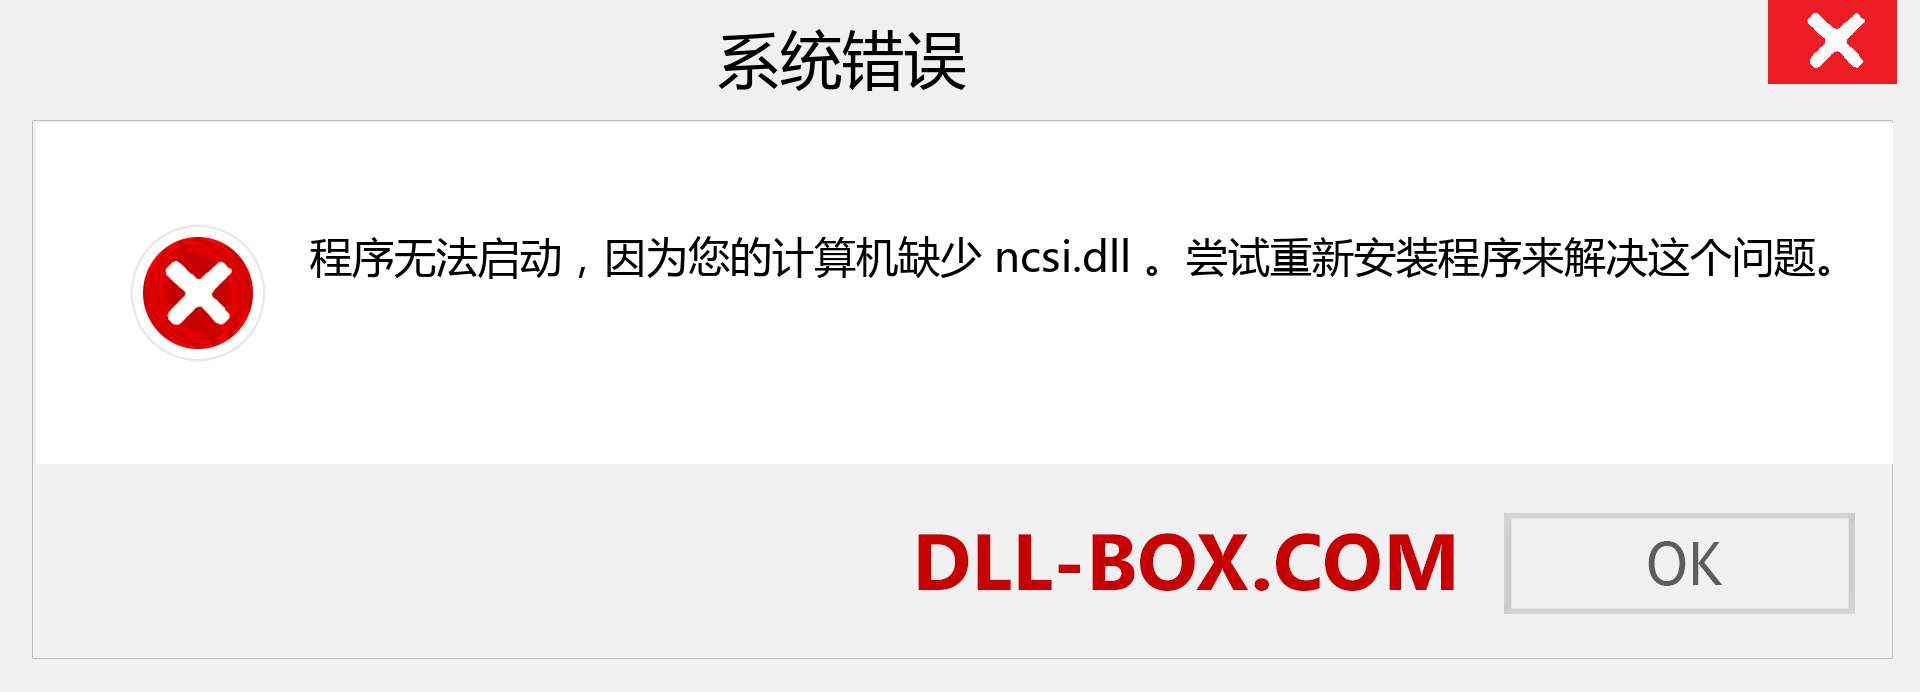 ncsi.dll 文件丢失？。 适用于 Windows 7、8、10 的下载 - 修复 Windows、照片、图像上的 ncsi dll 丢失错误